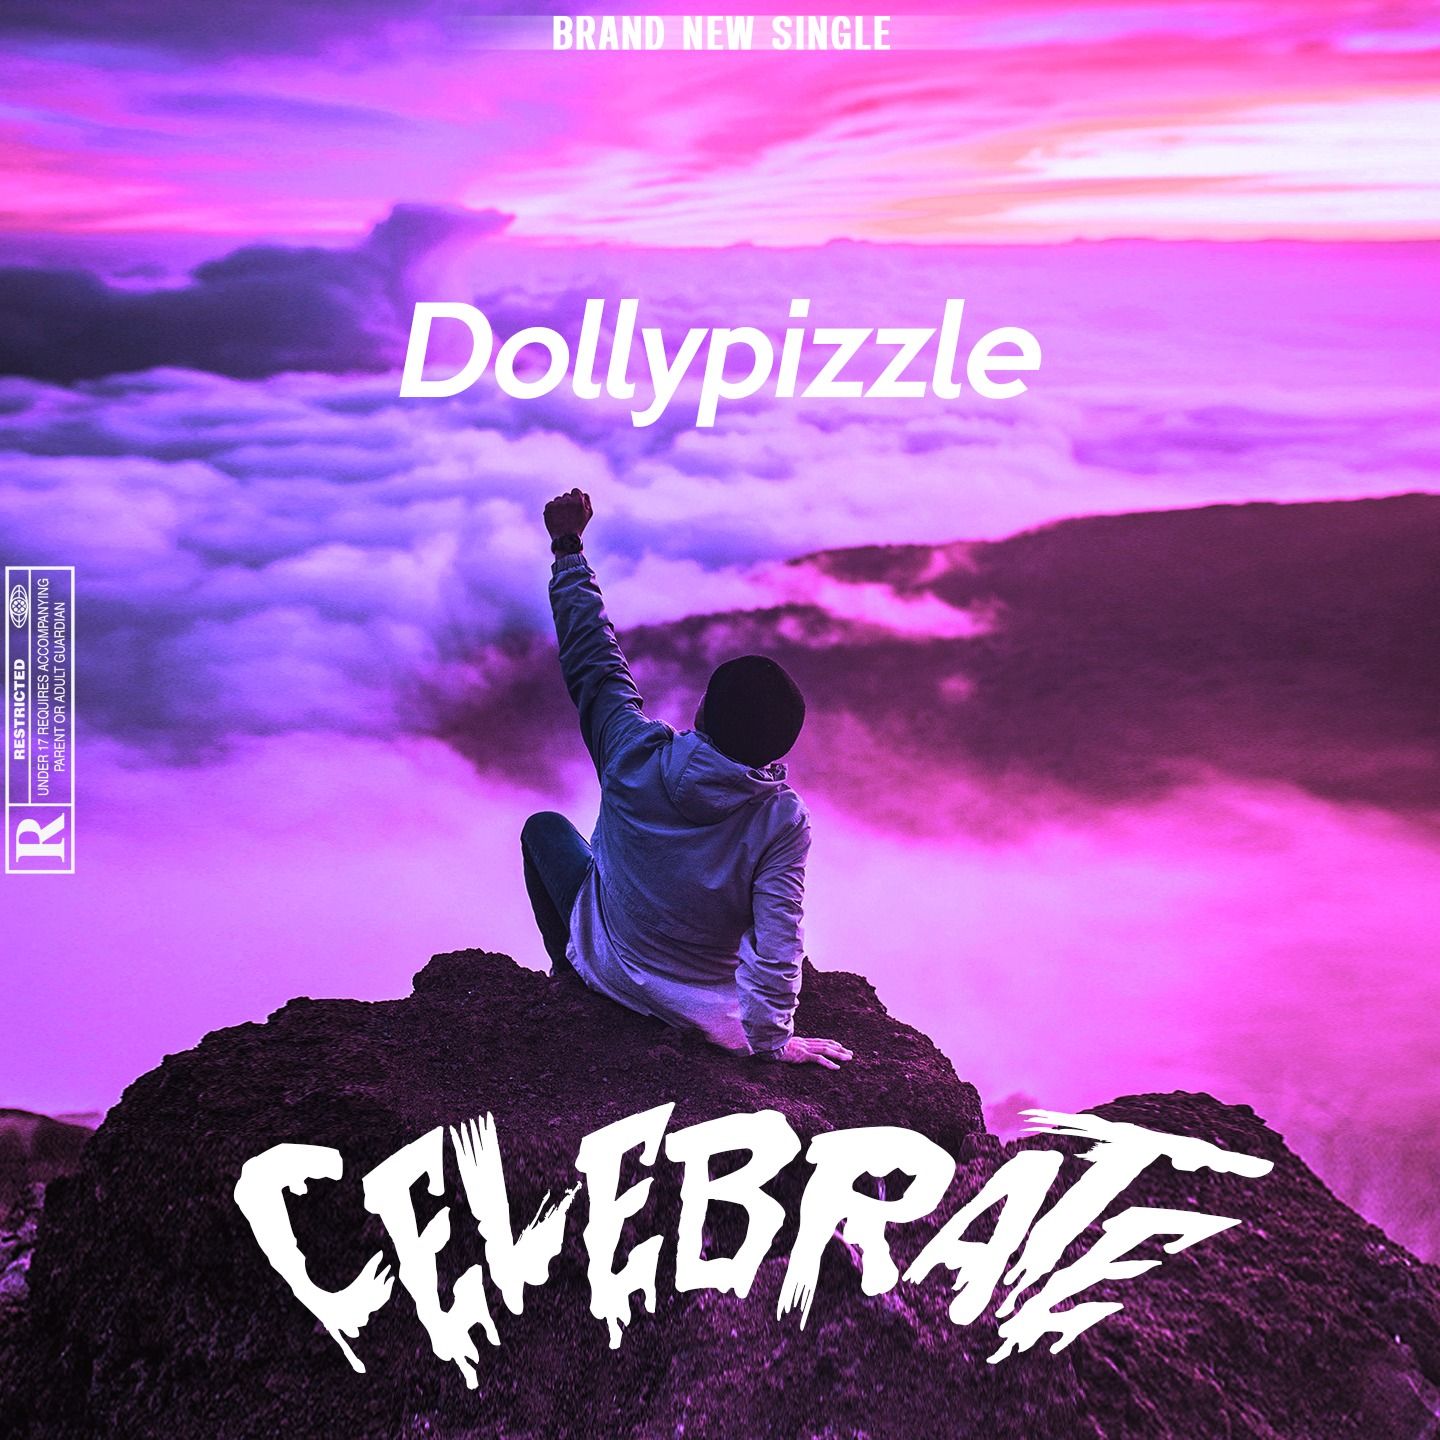 Dollypizzle – Celebrate